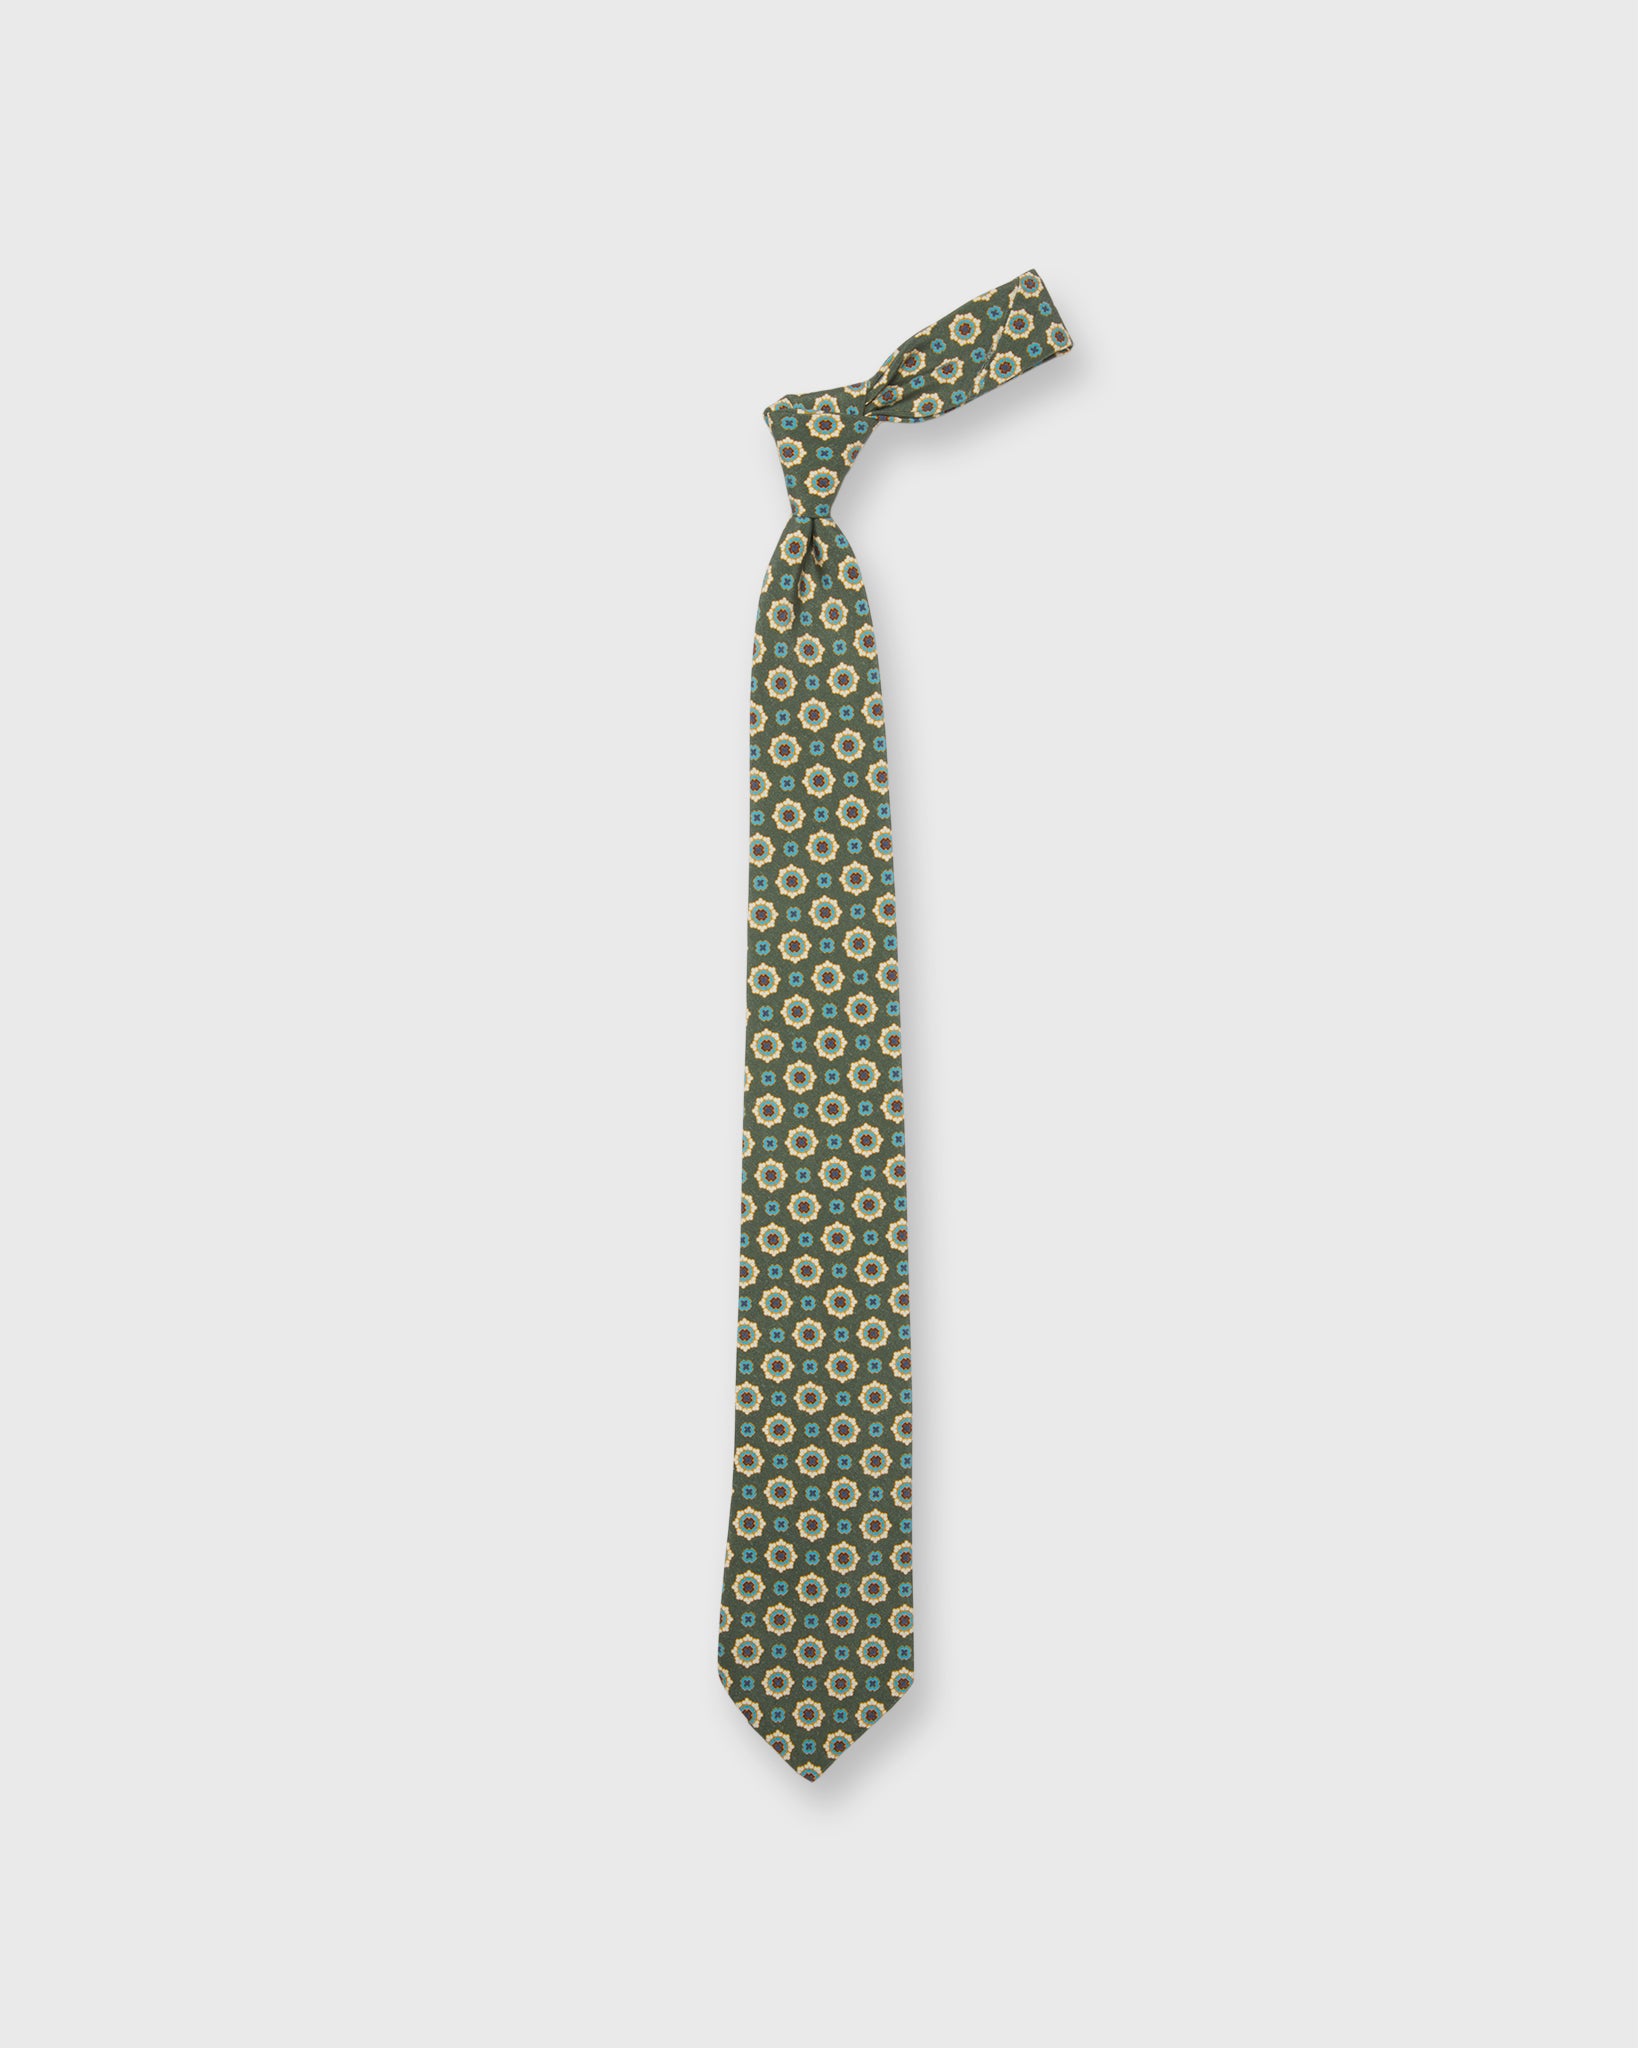 Silk Print Tie in Olive/River Medallion